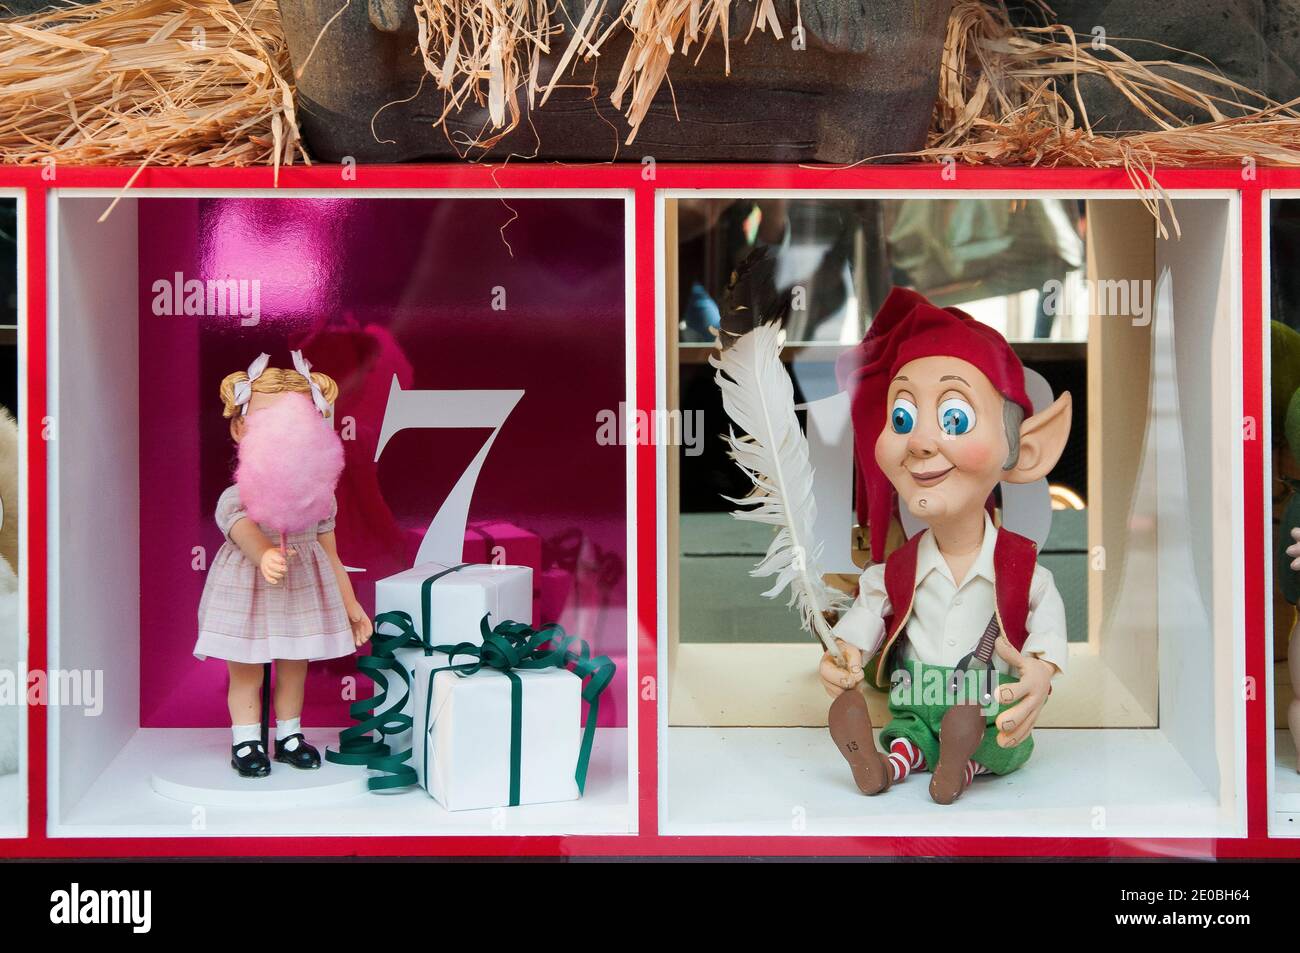 Weihnachten 2020 Fenster im Myer Kaufhaus in Bourke Street Mall, Melbourne, Fortsetzung einer 65-jährigen Tradition trotz der COVID-19 Pandemie Stockfoto